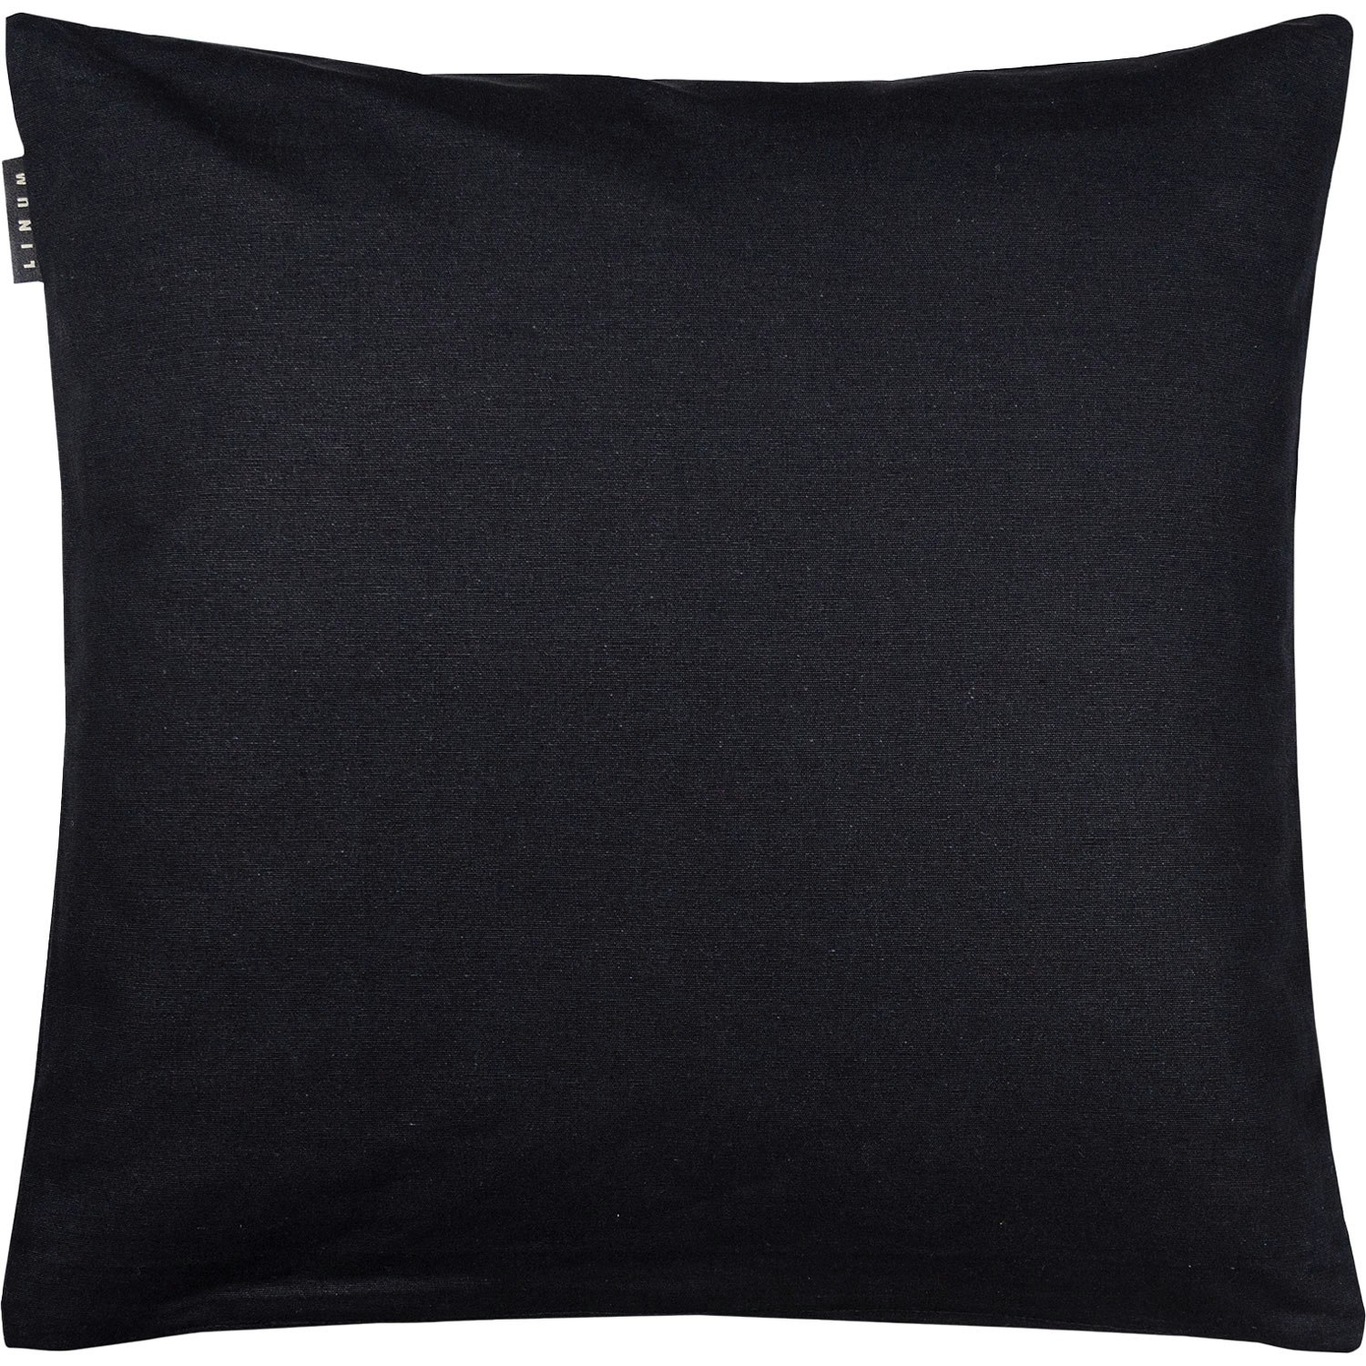 Annabell Cushion Cover 50x50 cm, Black